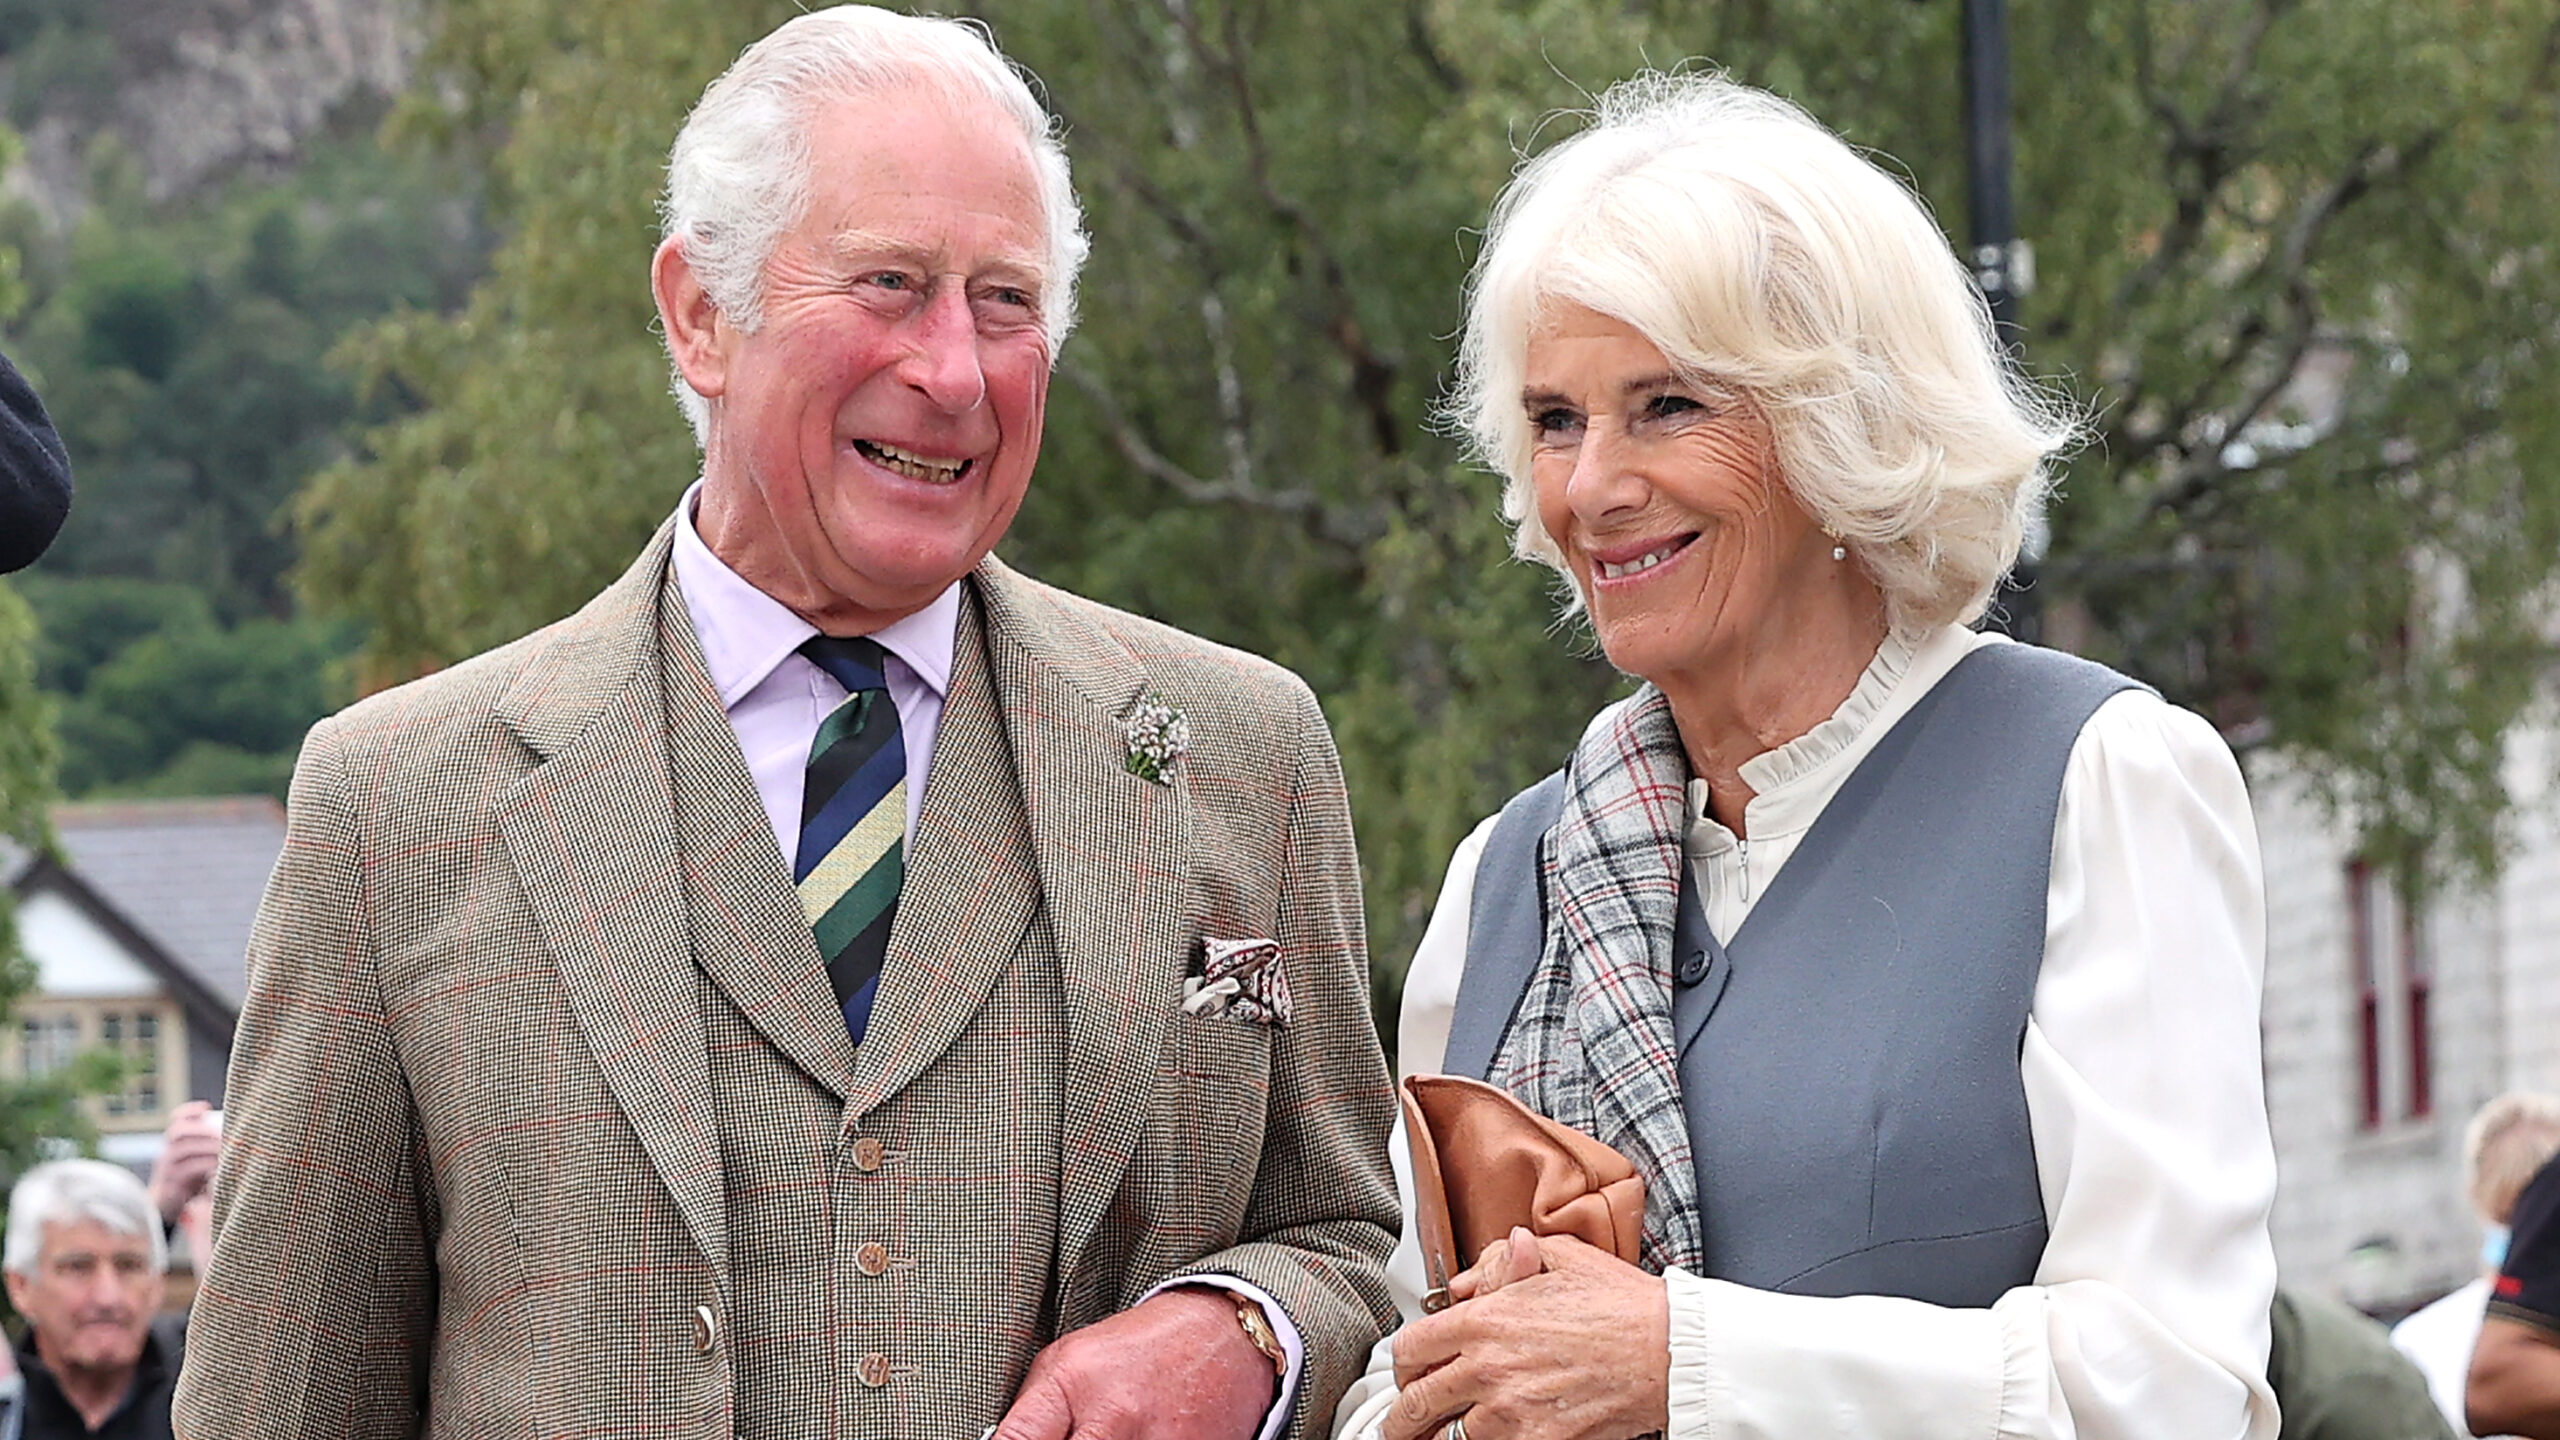 Camilla, esposa del príncipe Charles, también arroja positivo al COVID-19